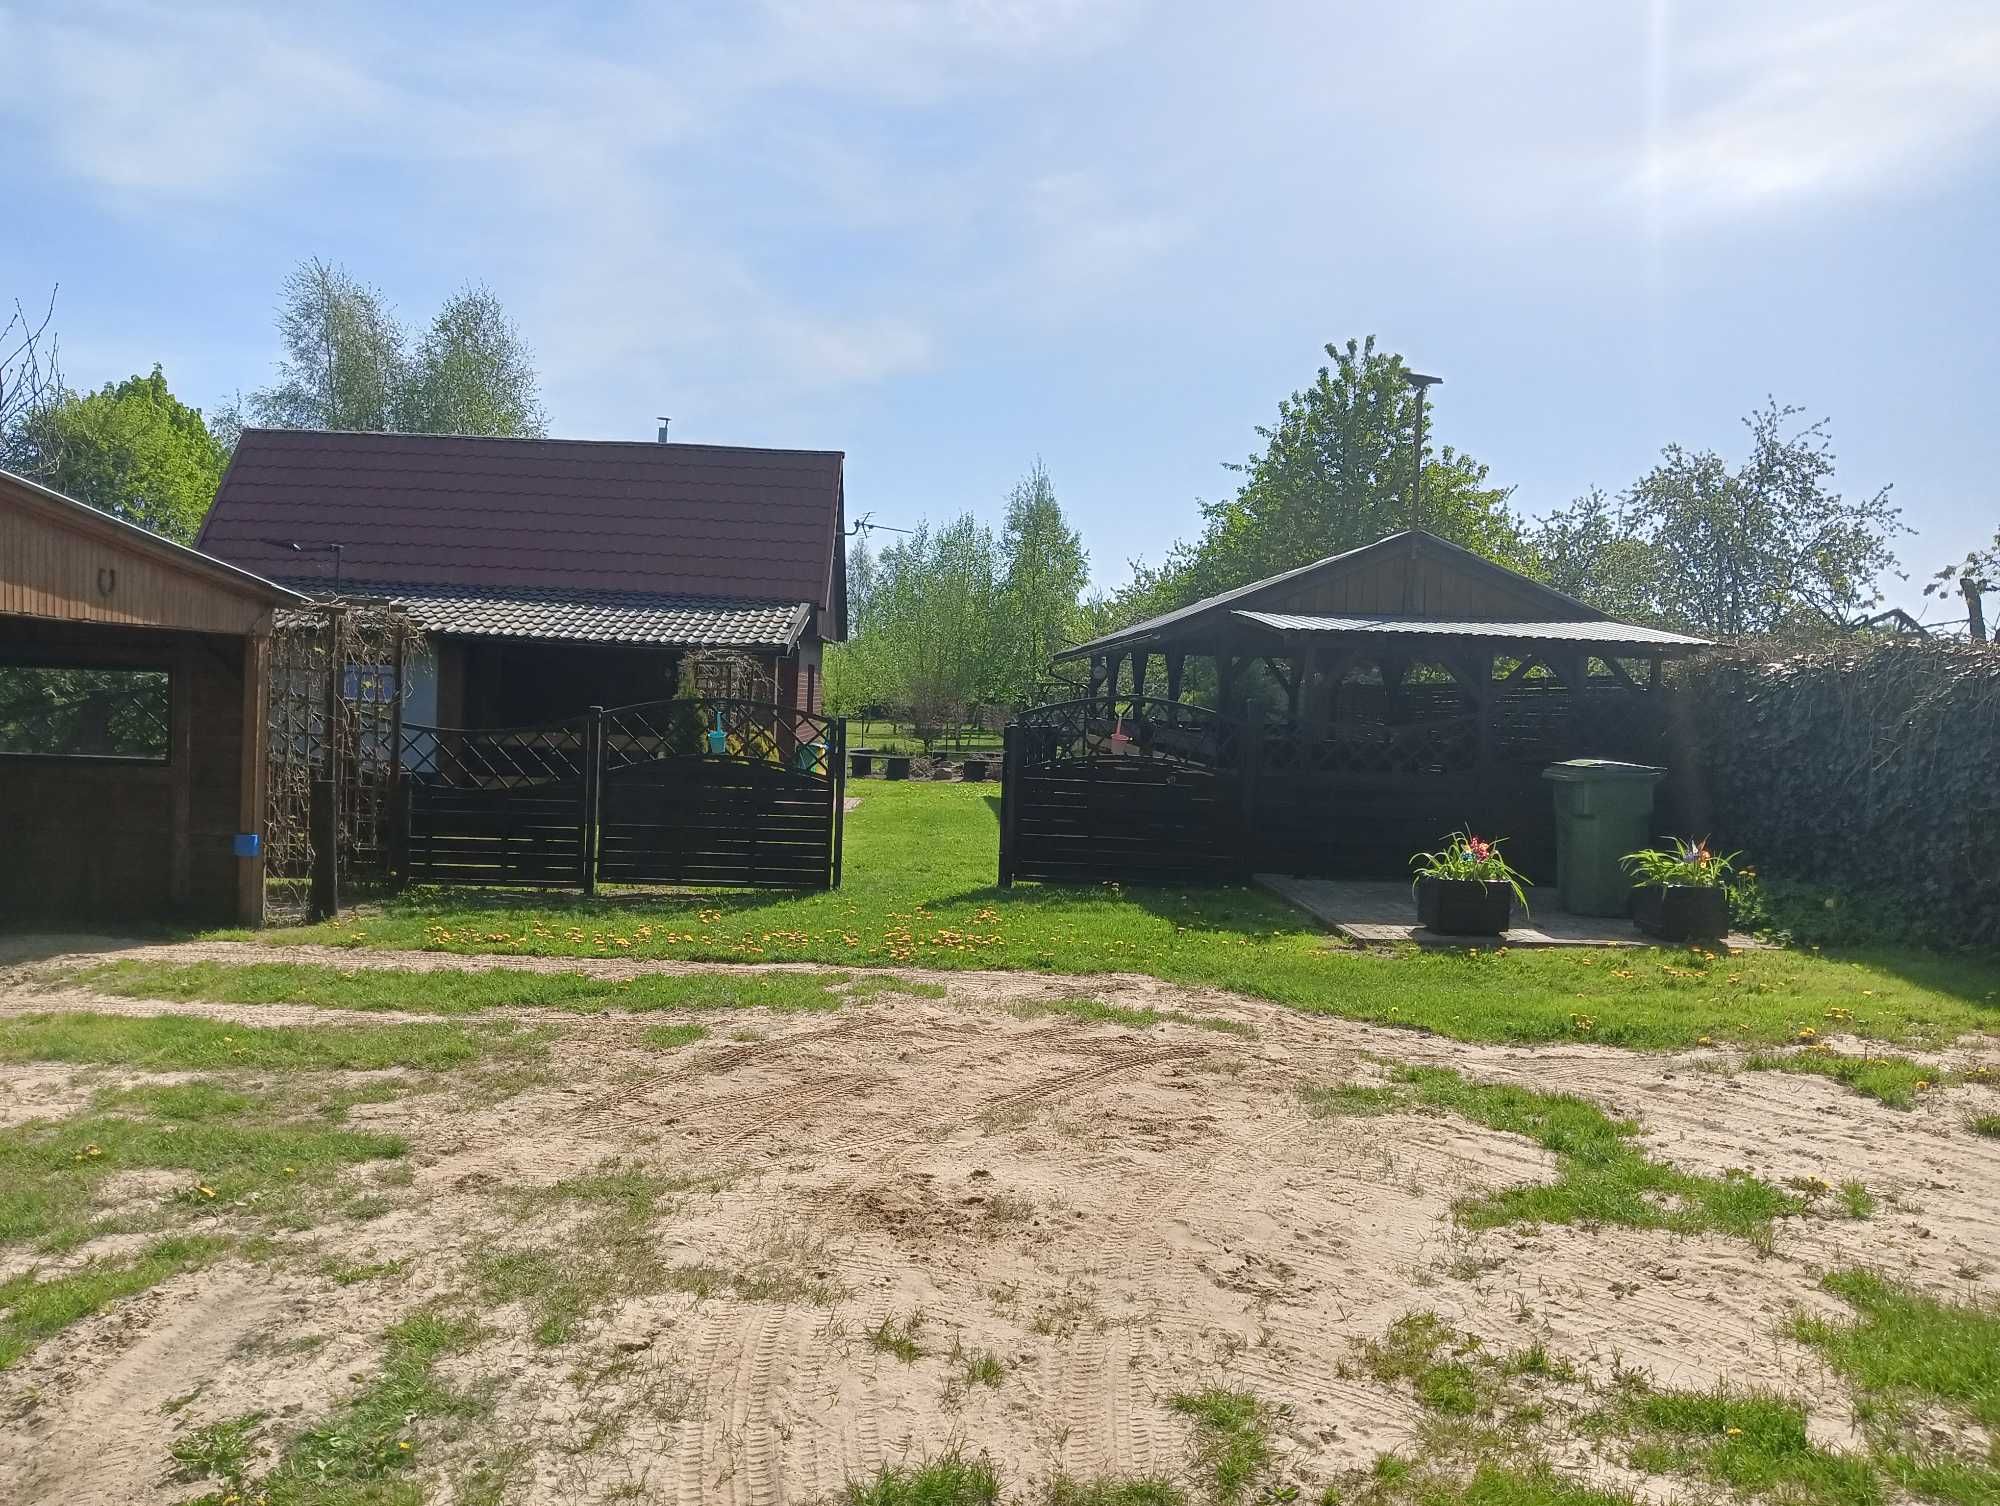 Agroturystyka Domek Jagoda- domek z dużym terenem na wyłączność